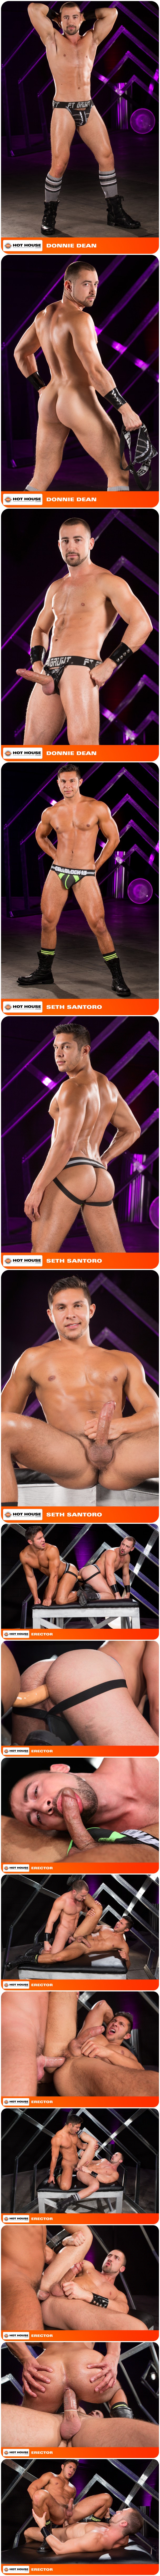 Hot House, Donnie Dean, Seth Santoro